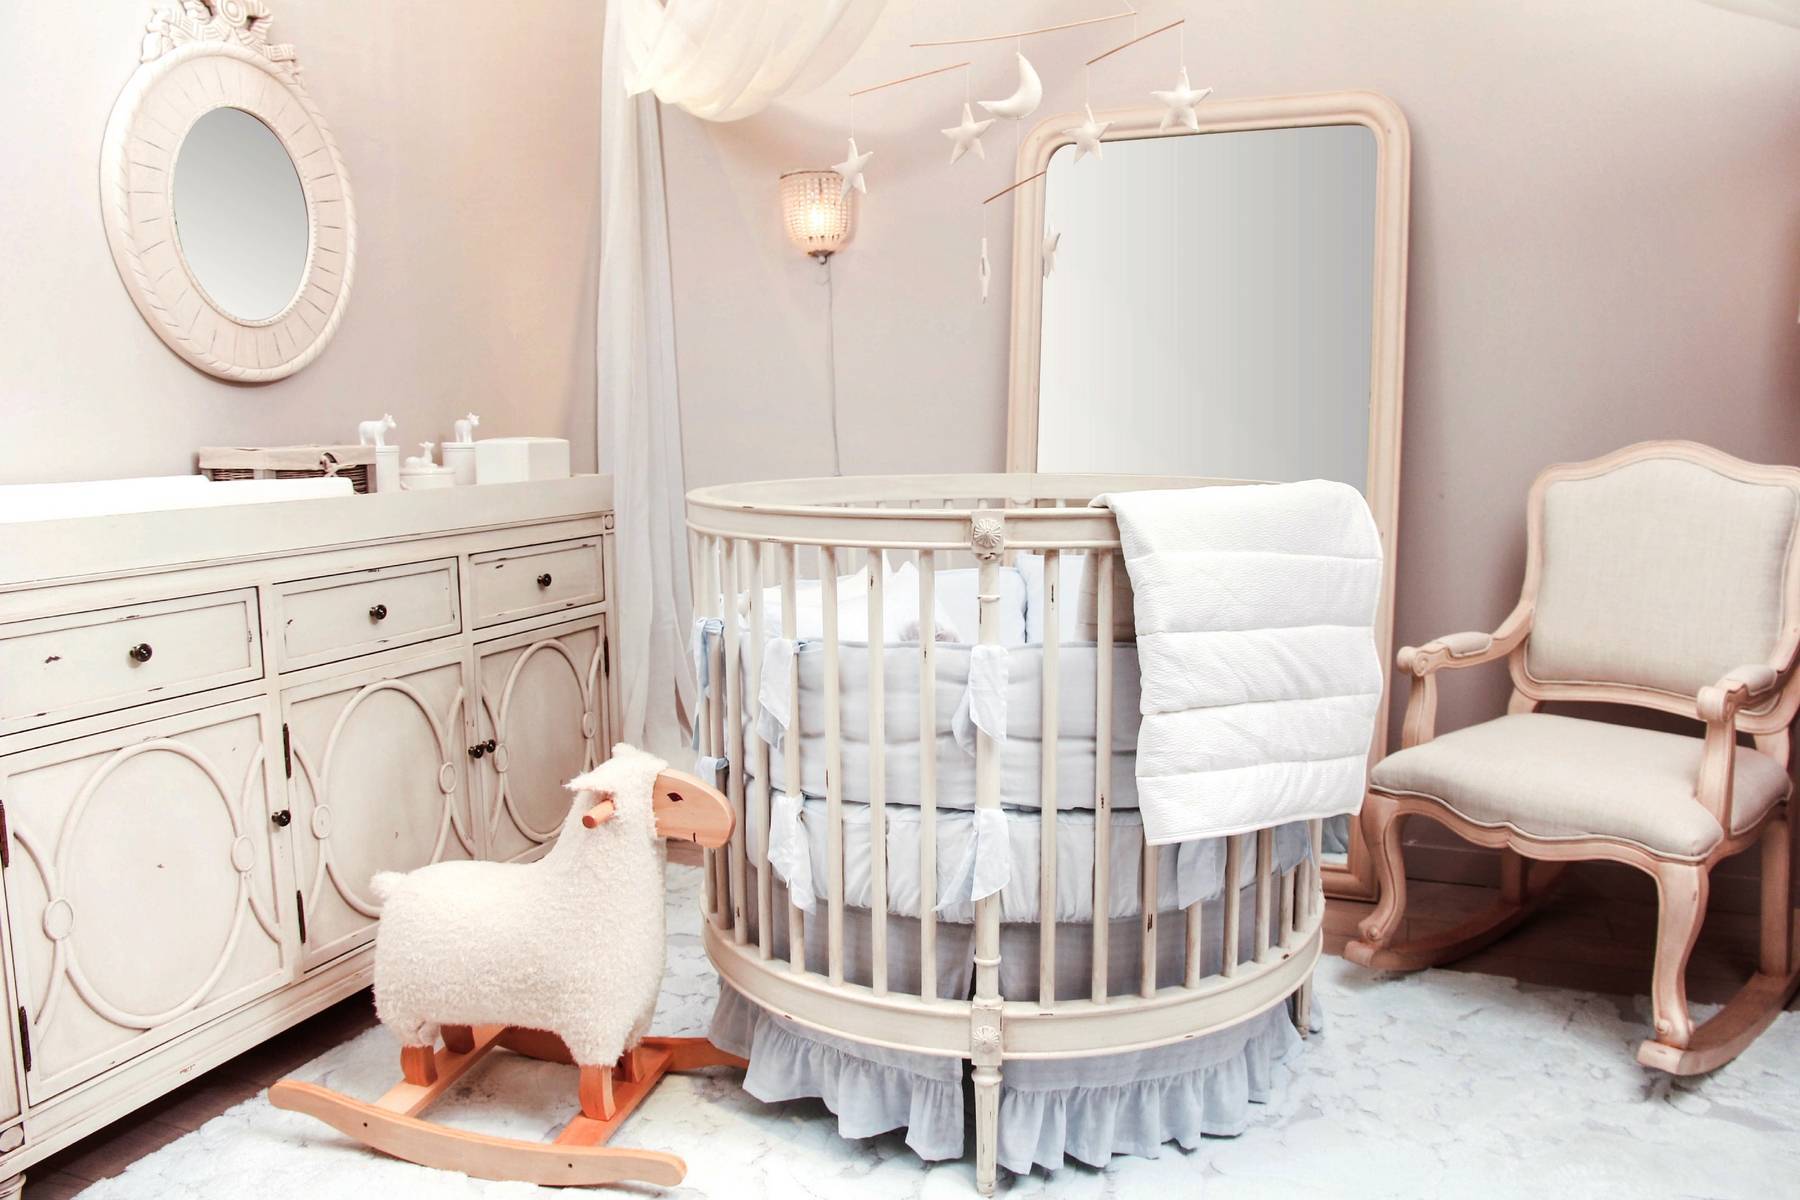 Кроватки для новорожденных - 100 фото вариантов красивого дизайна